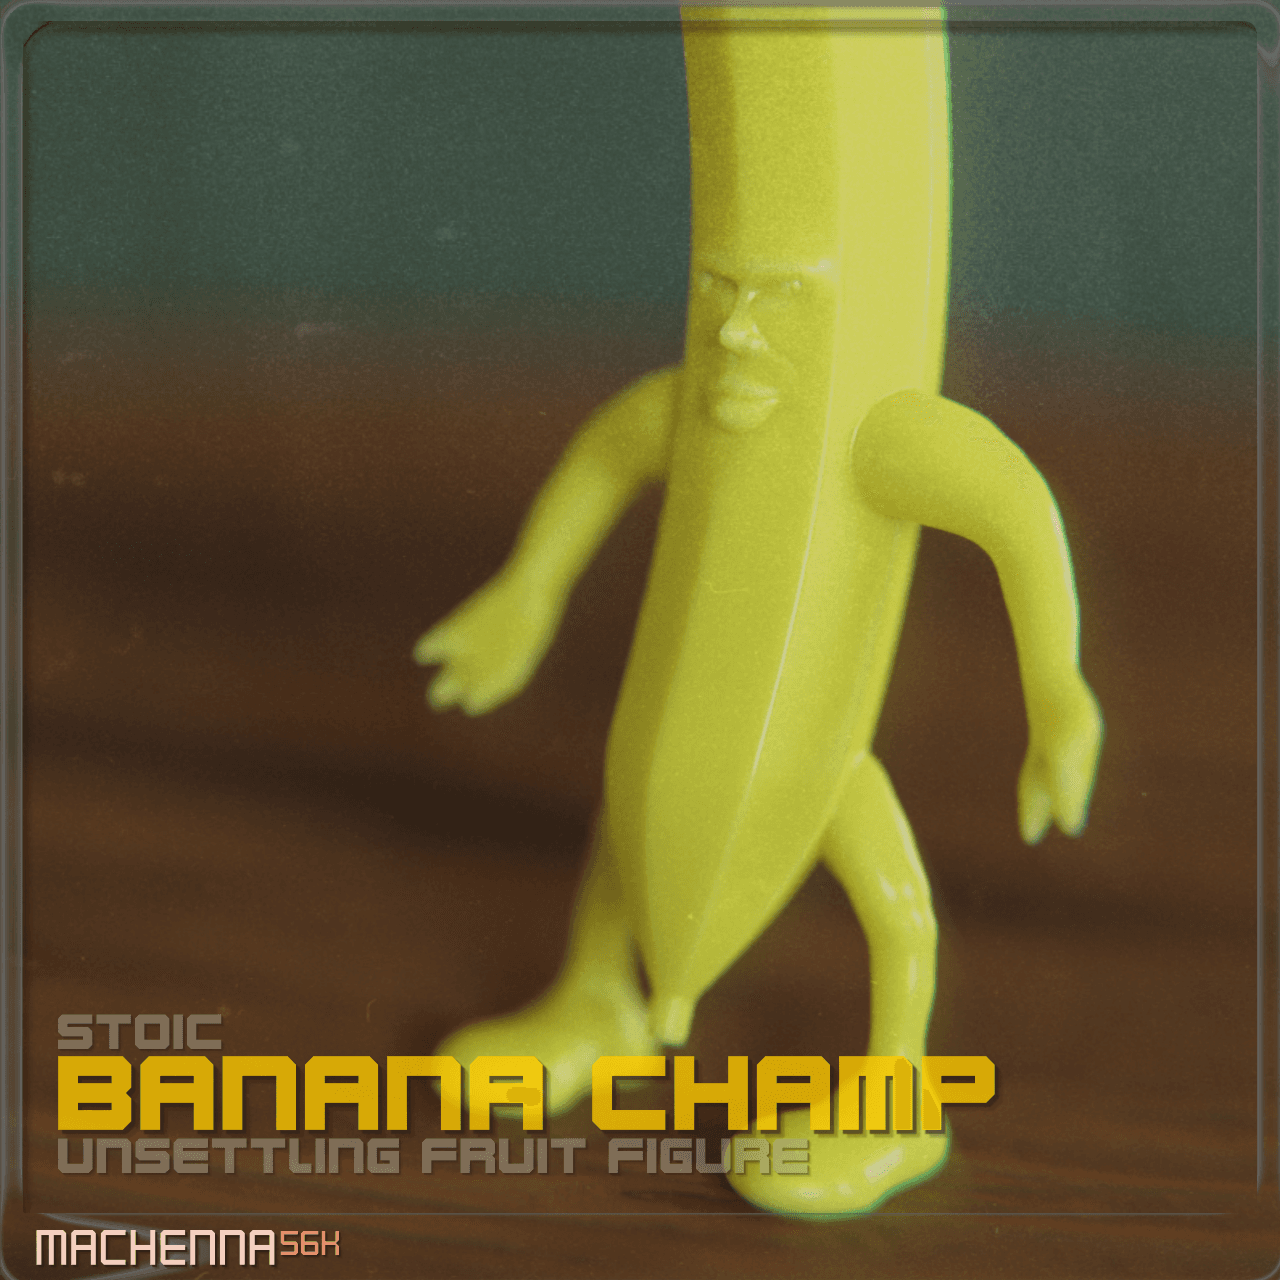 Stoic Banana Champ 3d model